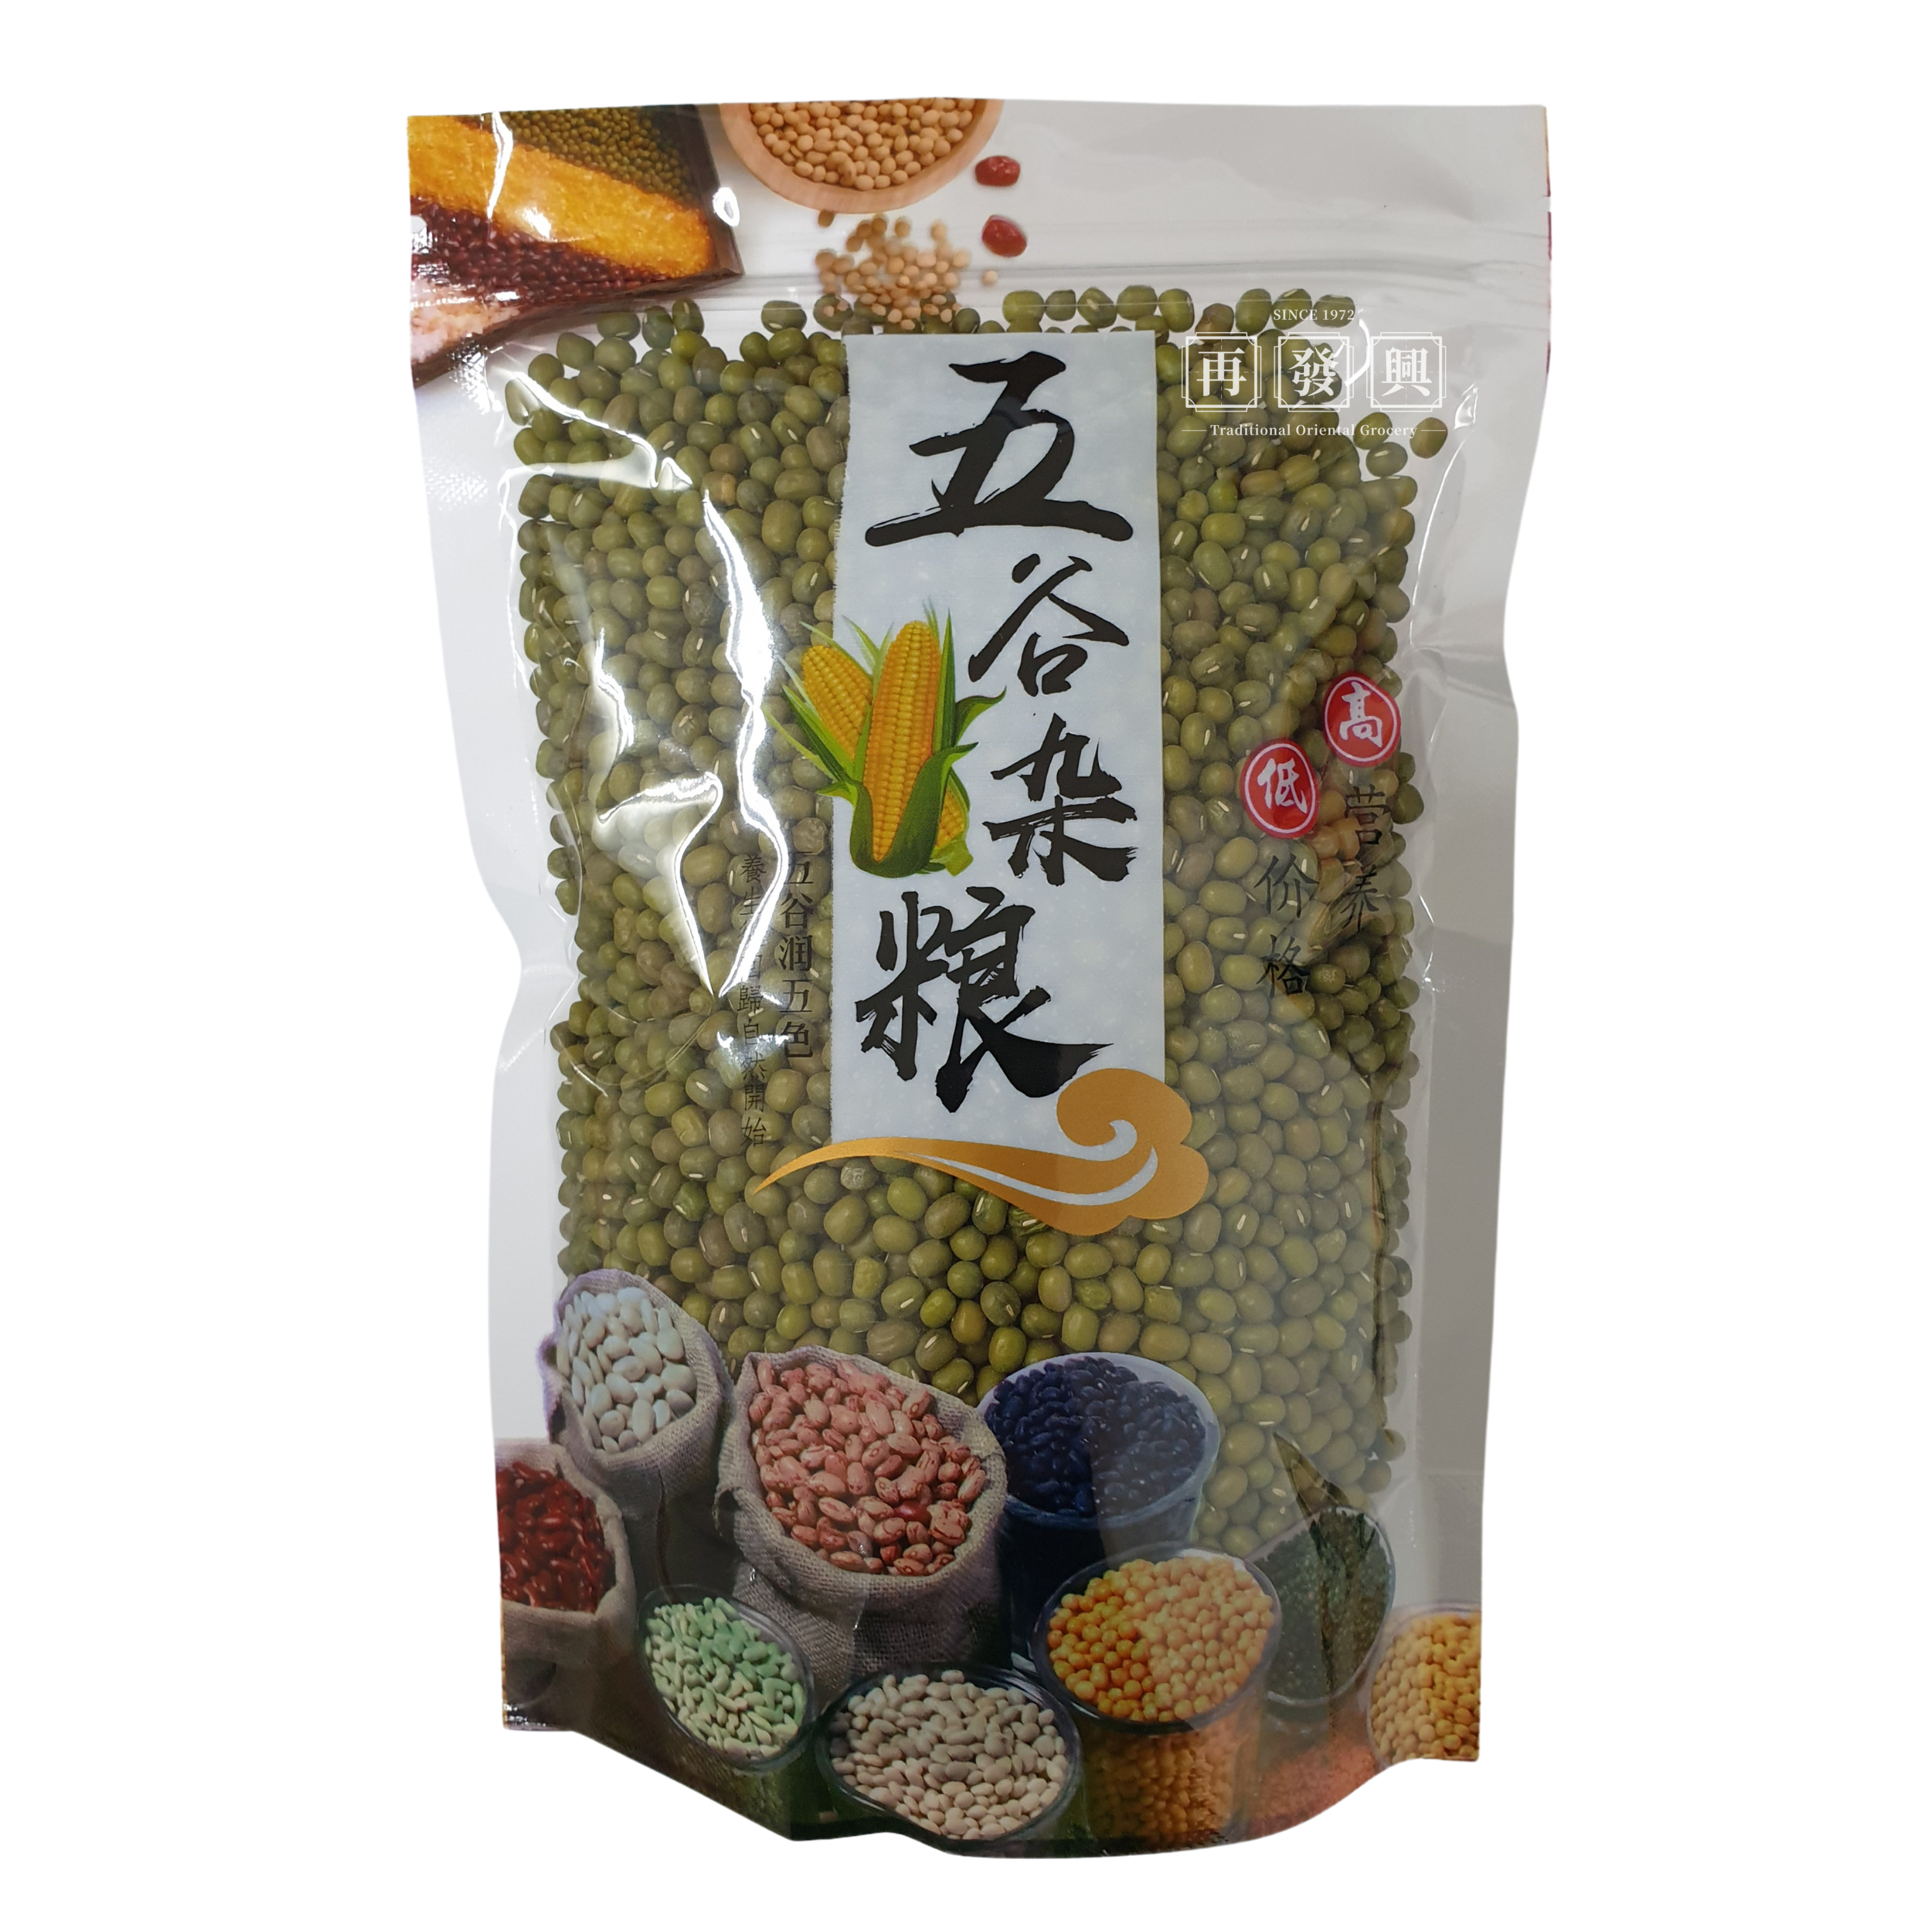 Coarse Grains Series Bean Pack: Green Bean 五谷杂粮类(绿豆) 500g